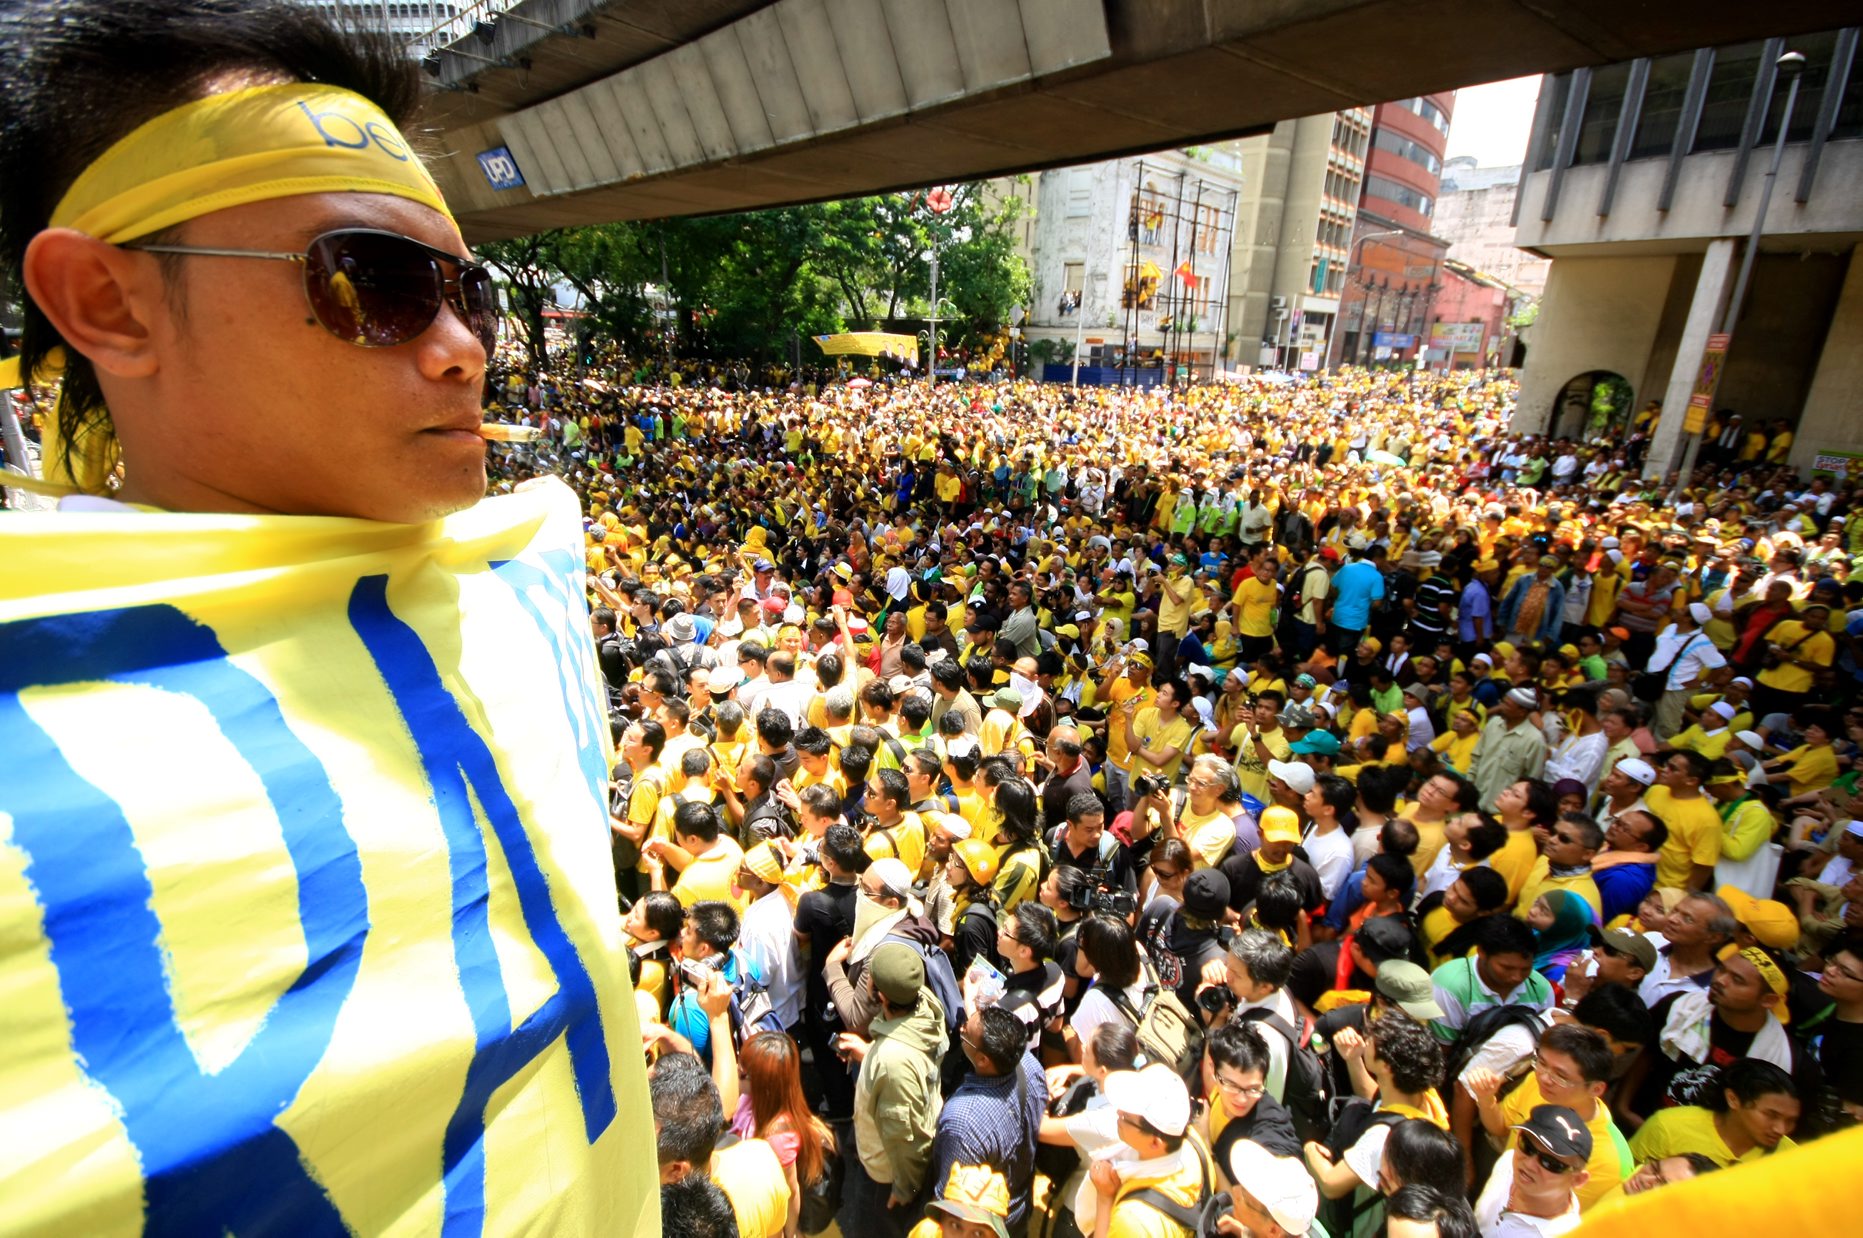 KUALA LUMPUR 28 APRIL 2012- Seorang Penyokong memegang sepanduk bersih sebagai tanda protes kerajaan di dataran Merdeka sempena perhimpunan Bersih 3.0 di Dataran merdeka di sini,hari ini.
GAMBAR : IRWAN MAJID
PEMBERITA : TEAM UTUSAN